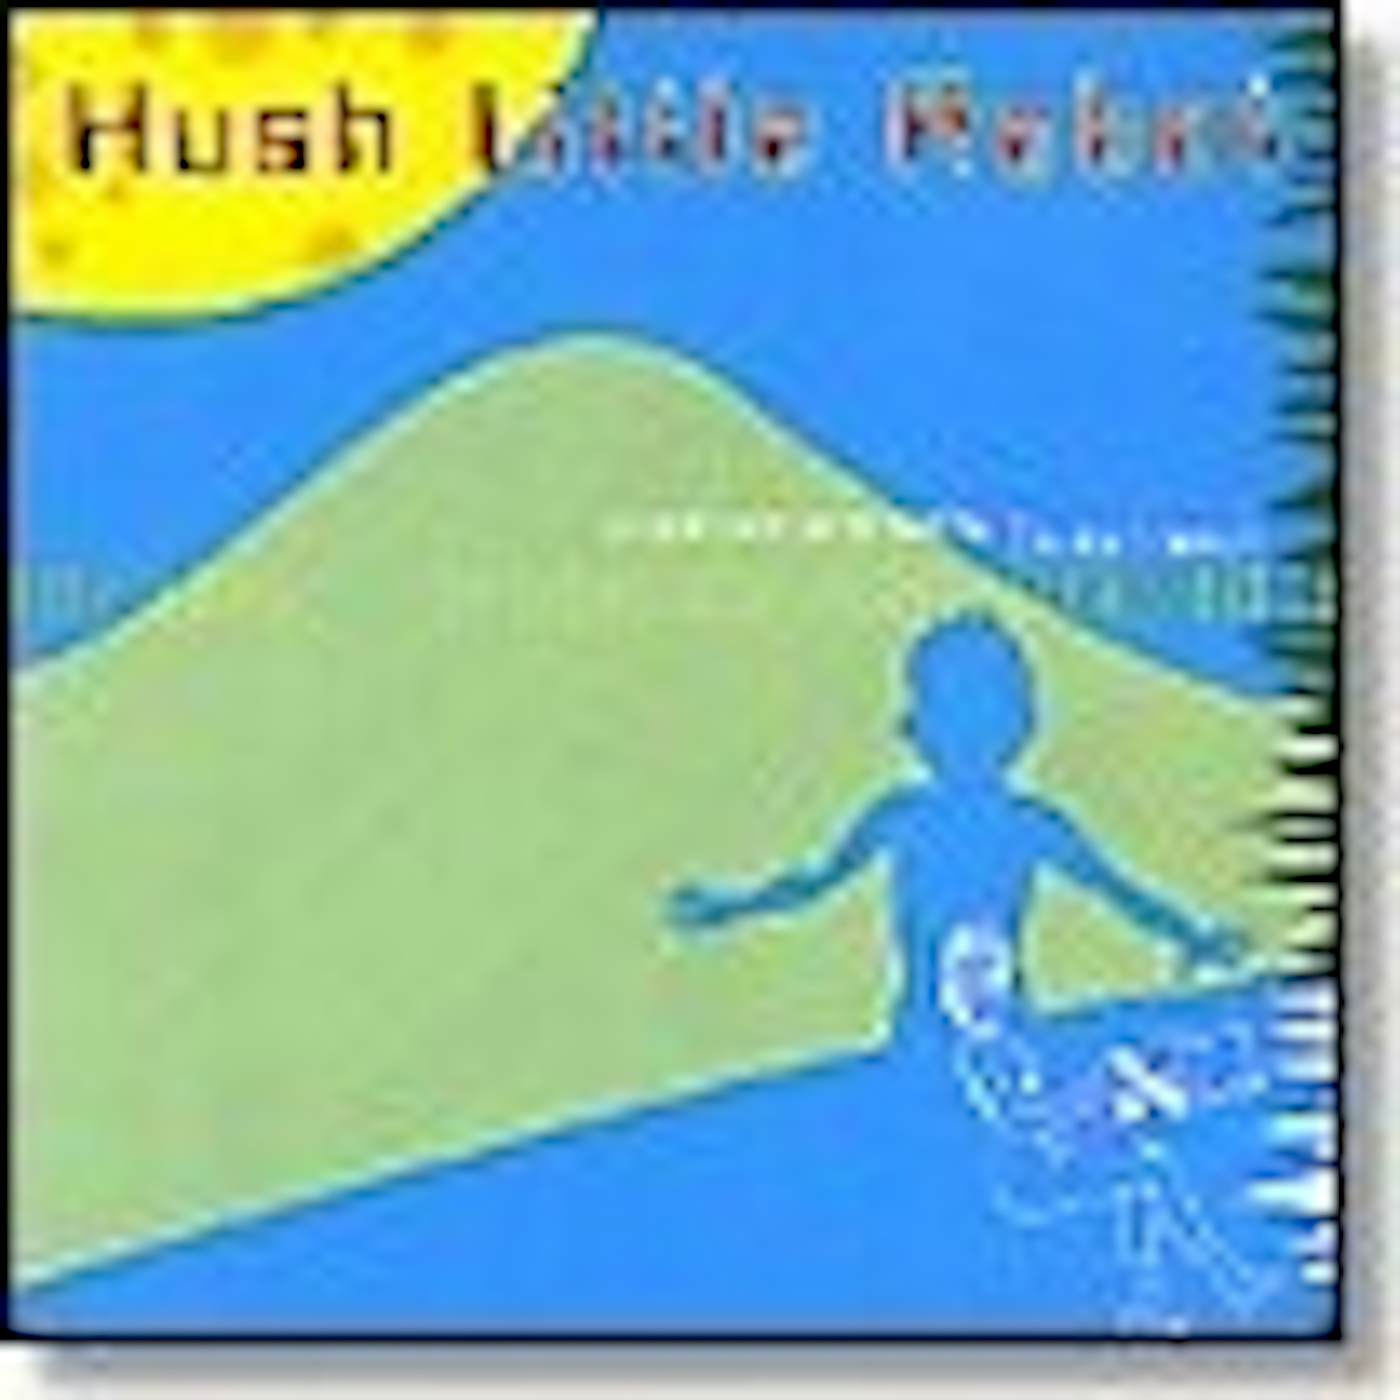 Bruce Haack HUSH LITTLE Vinyl Record